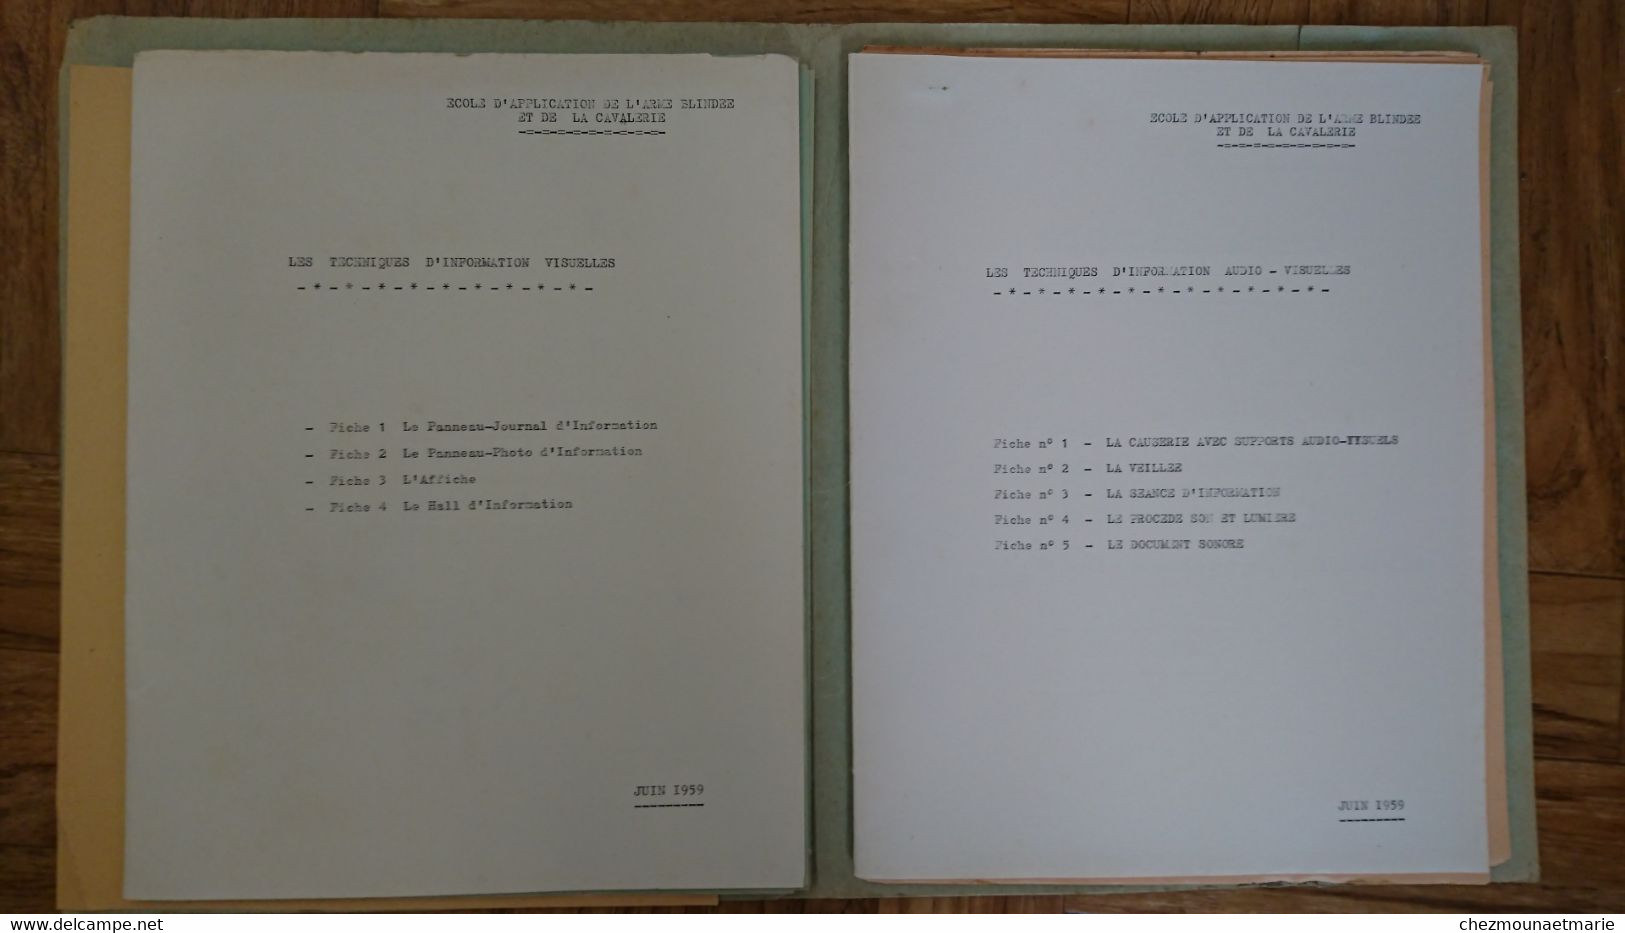 JUIN 1959 ECOLE ARME BLINDEE ET CAVALERIE - PROCEDES TECHNIQUES D ACTION PSYCHOLOGIQUE 39 FEUILLES - Documenti